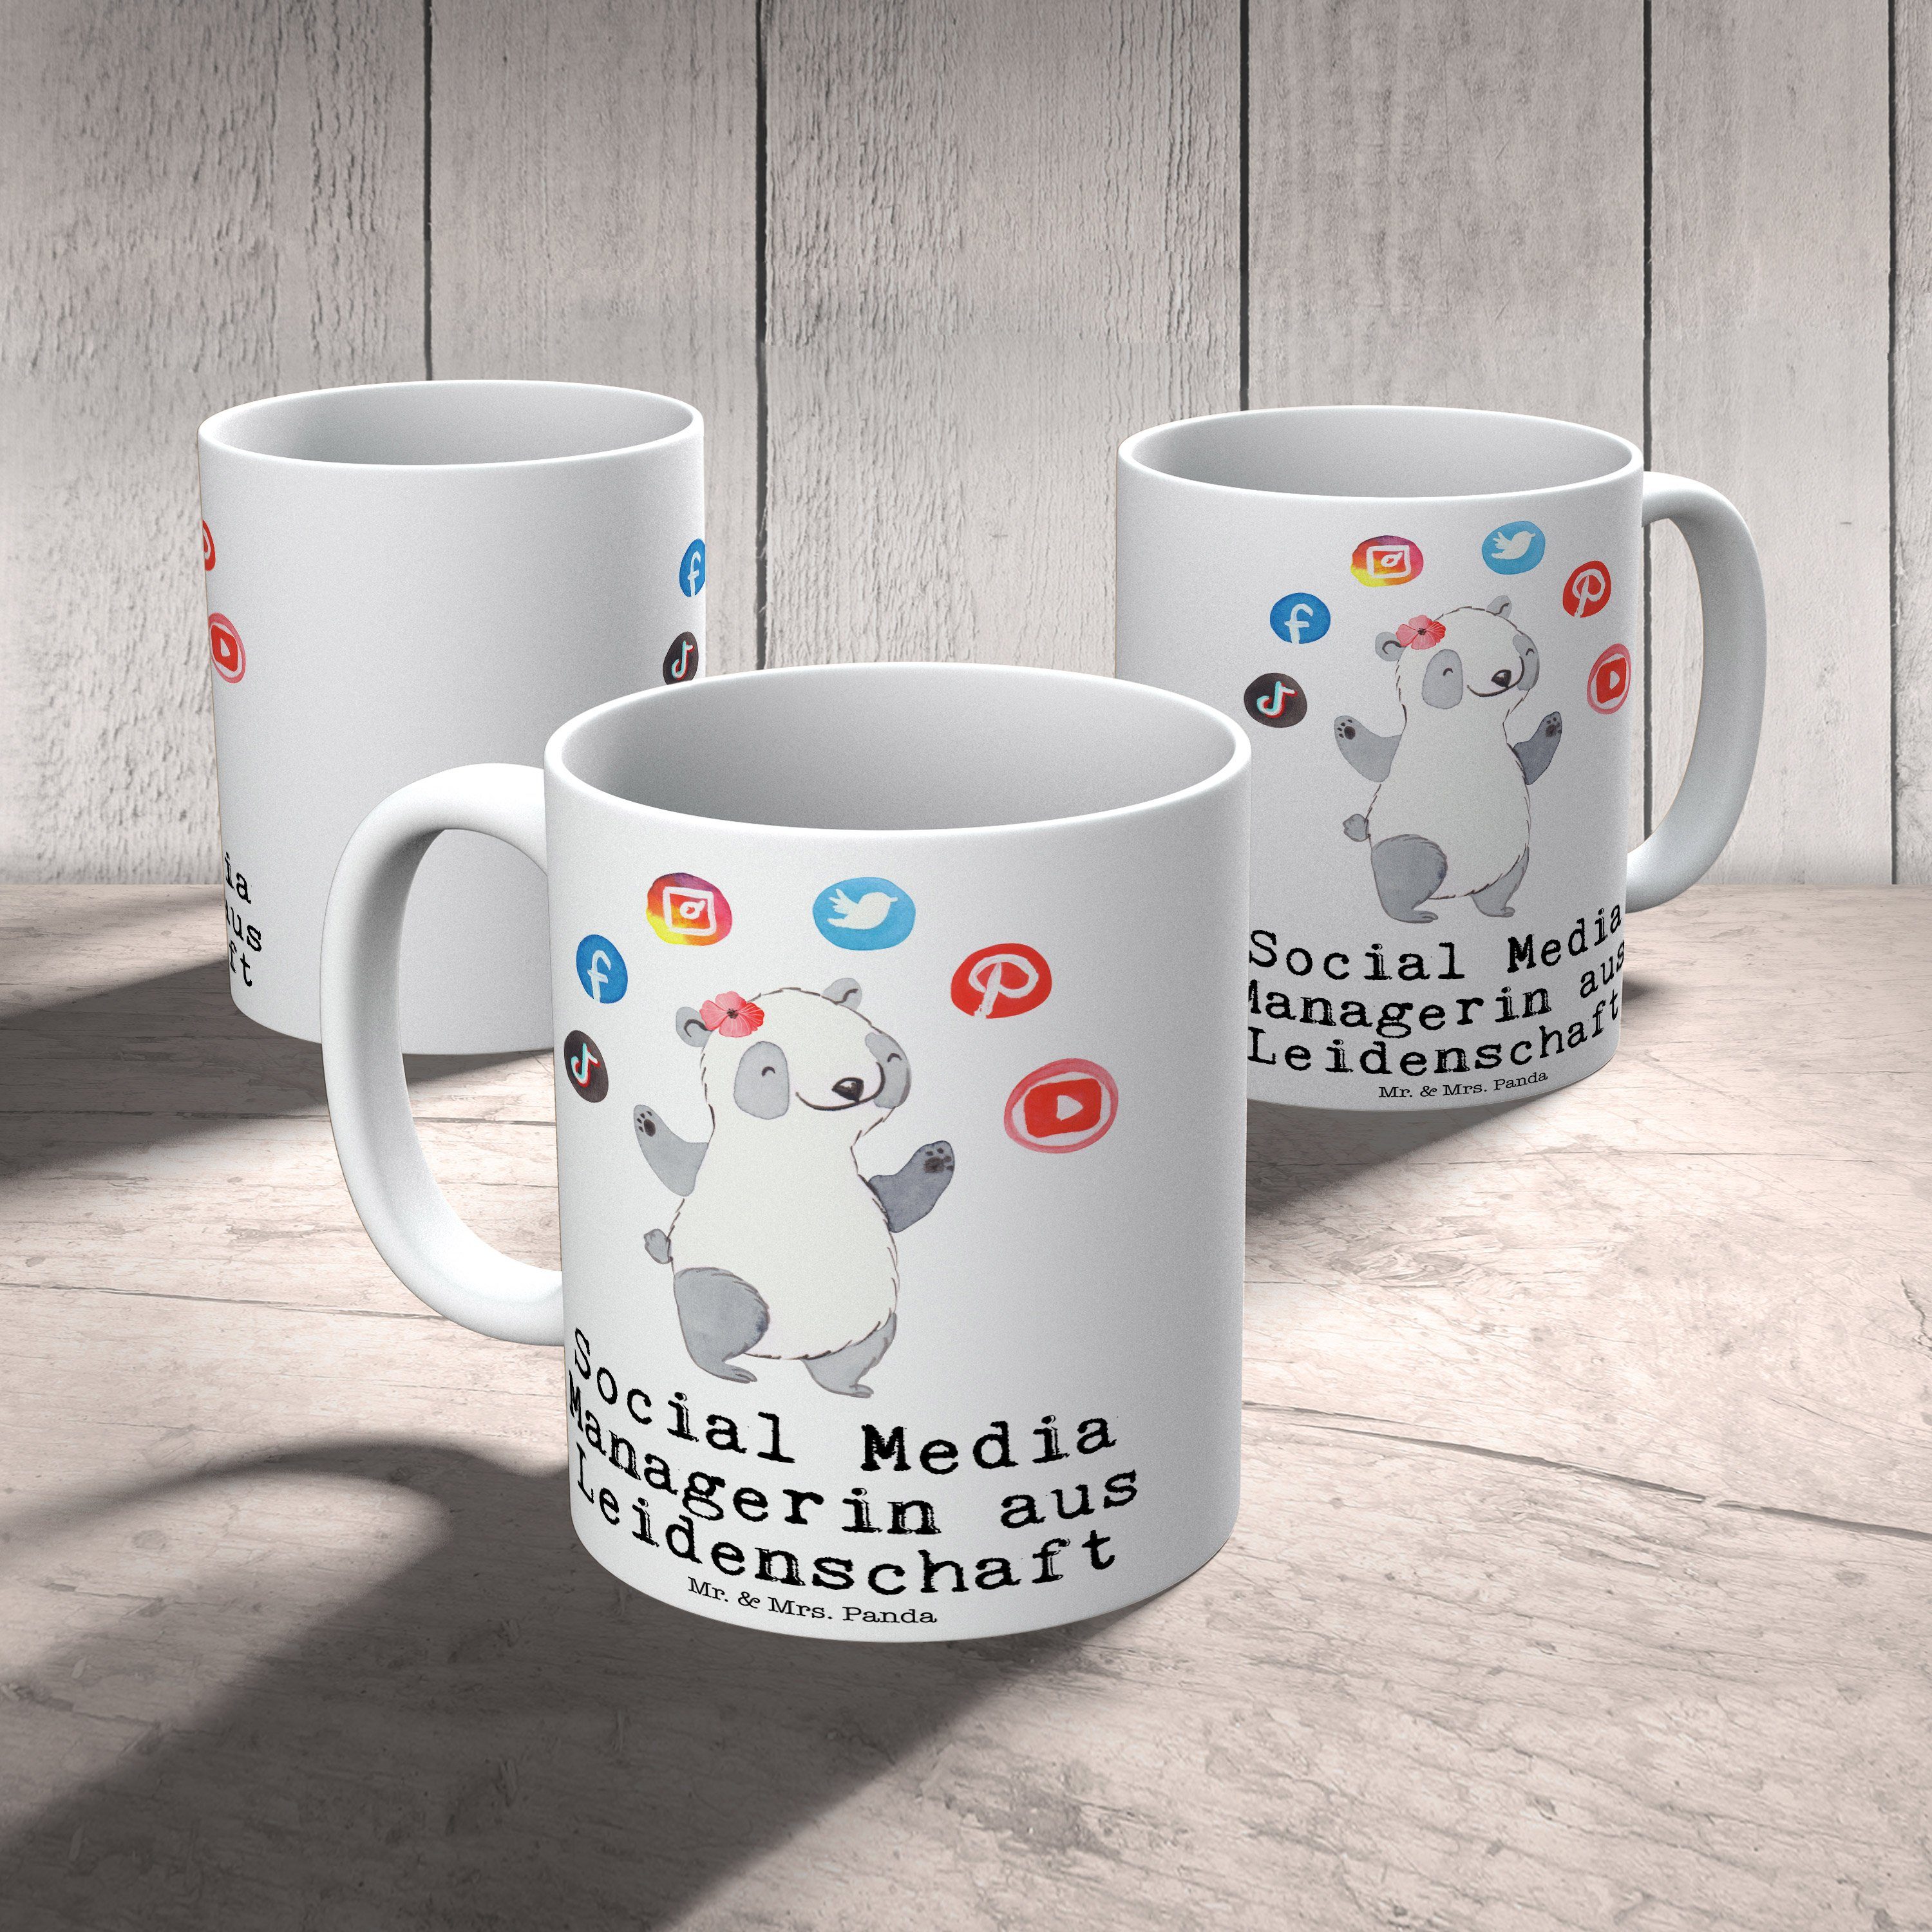 - Mr. aus Tasse Media Leidenschaft - Panda Managerin Keramik Mrs. Weiß Teebecher, & Geschenk, Social